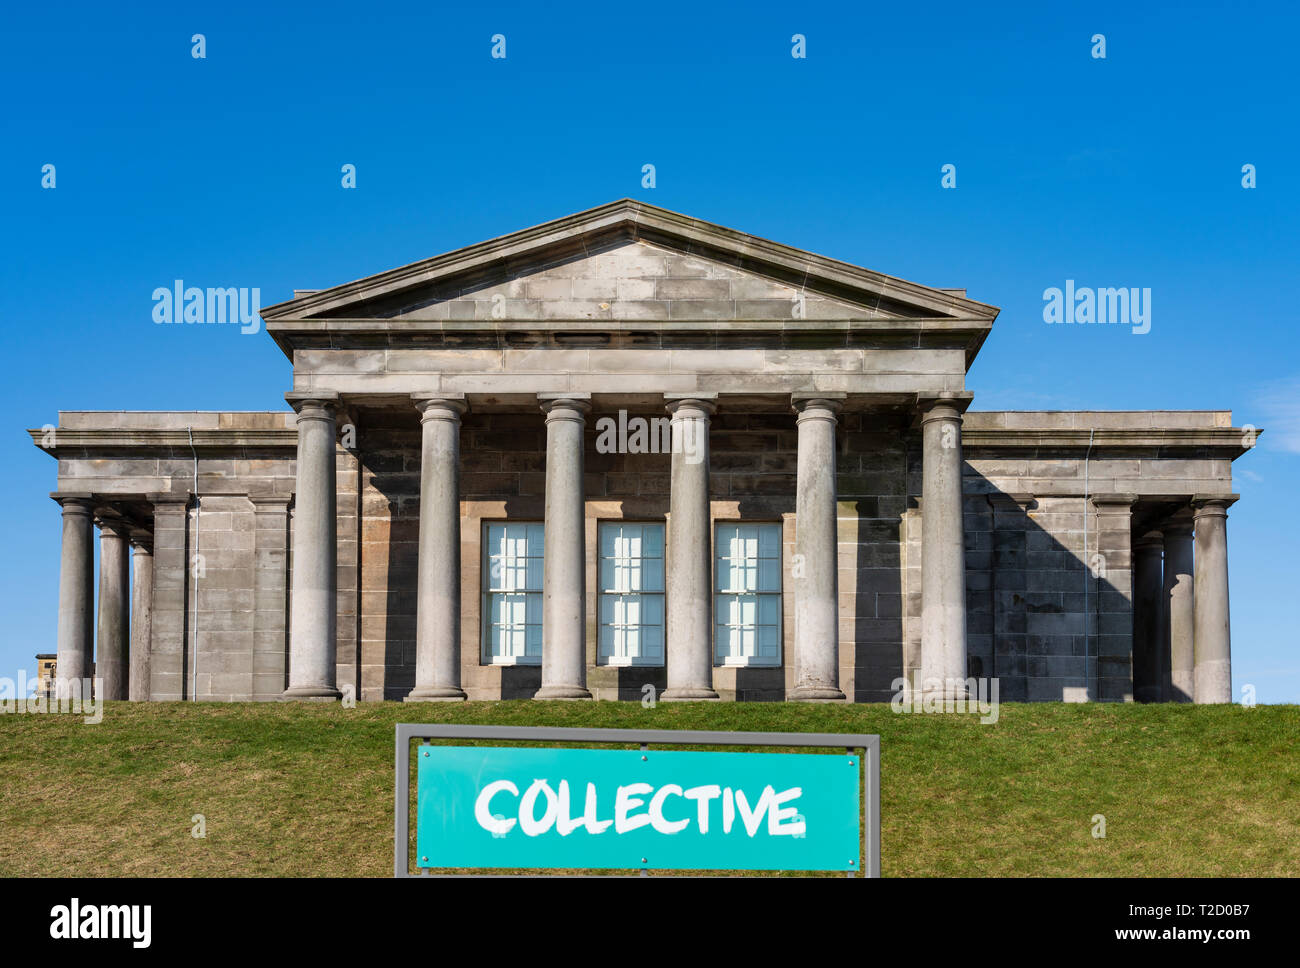 Il nuovo contratto collettivo di arts center presso l'ex città Osservatorio sulla Calton Hill a Edimburgo, Scozia, Regno Unito Foto Stock